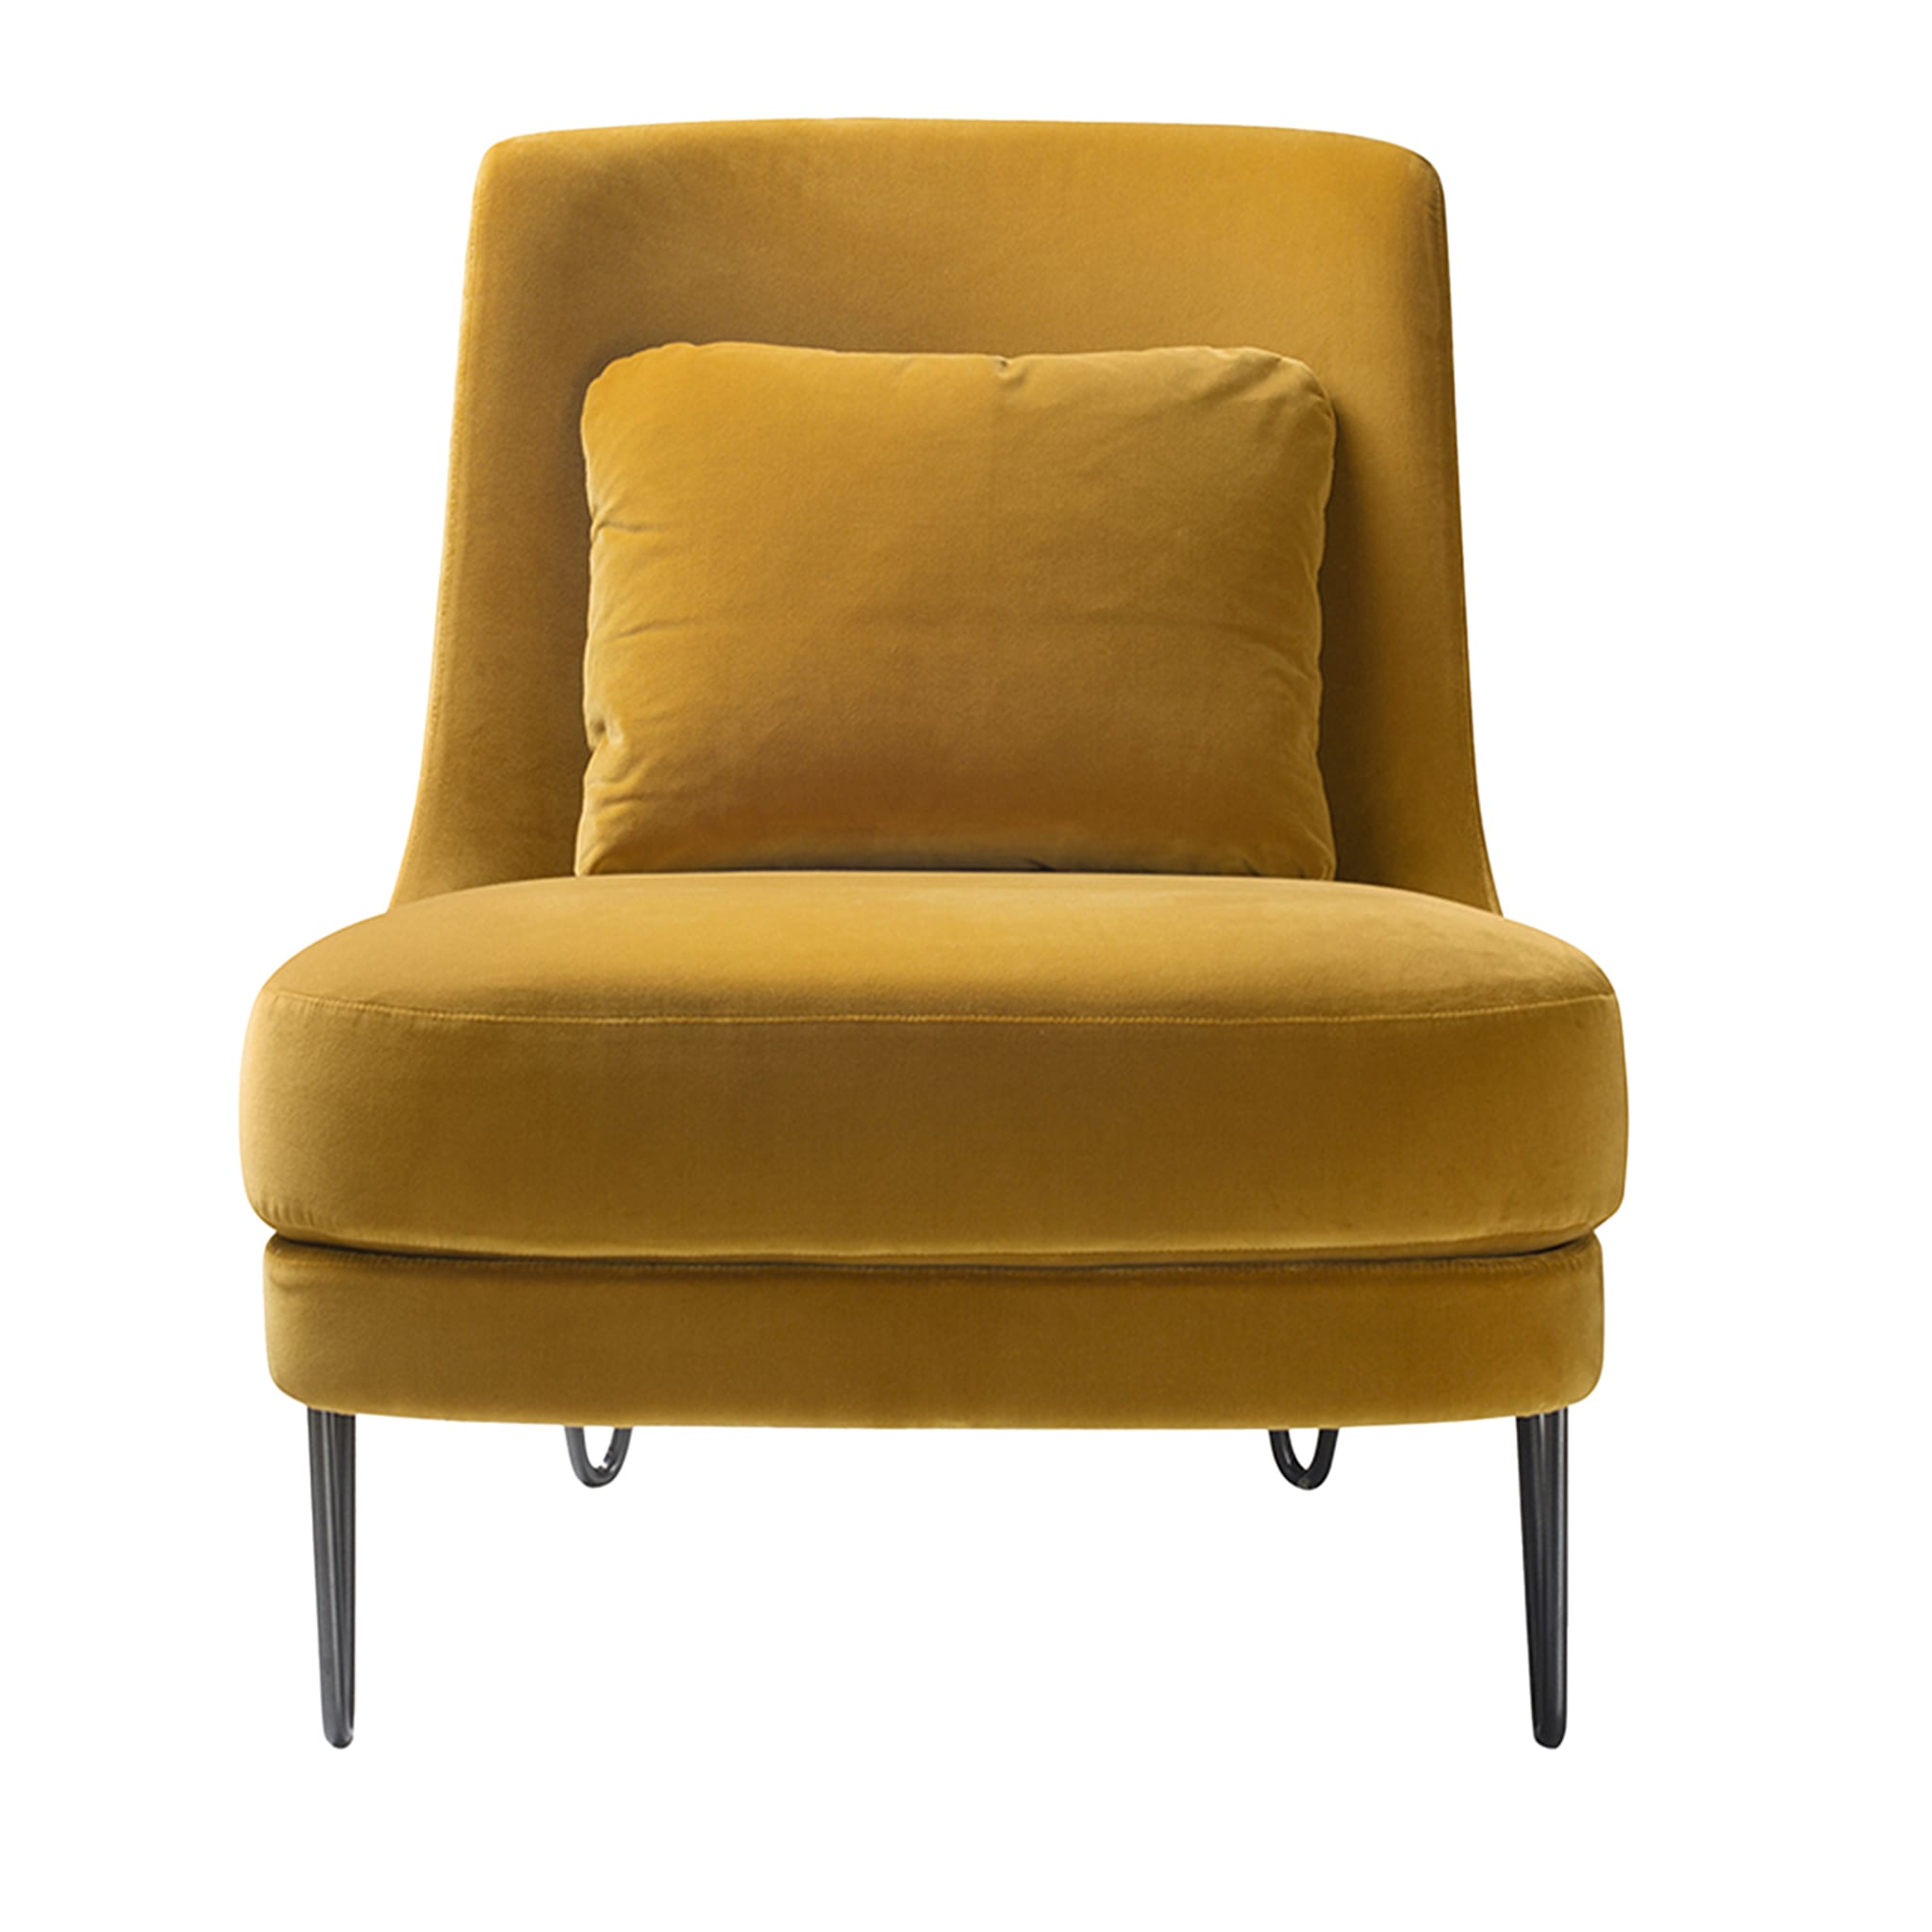 Chris Saffron-Yellow Lounge Chair - Main view